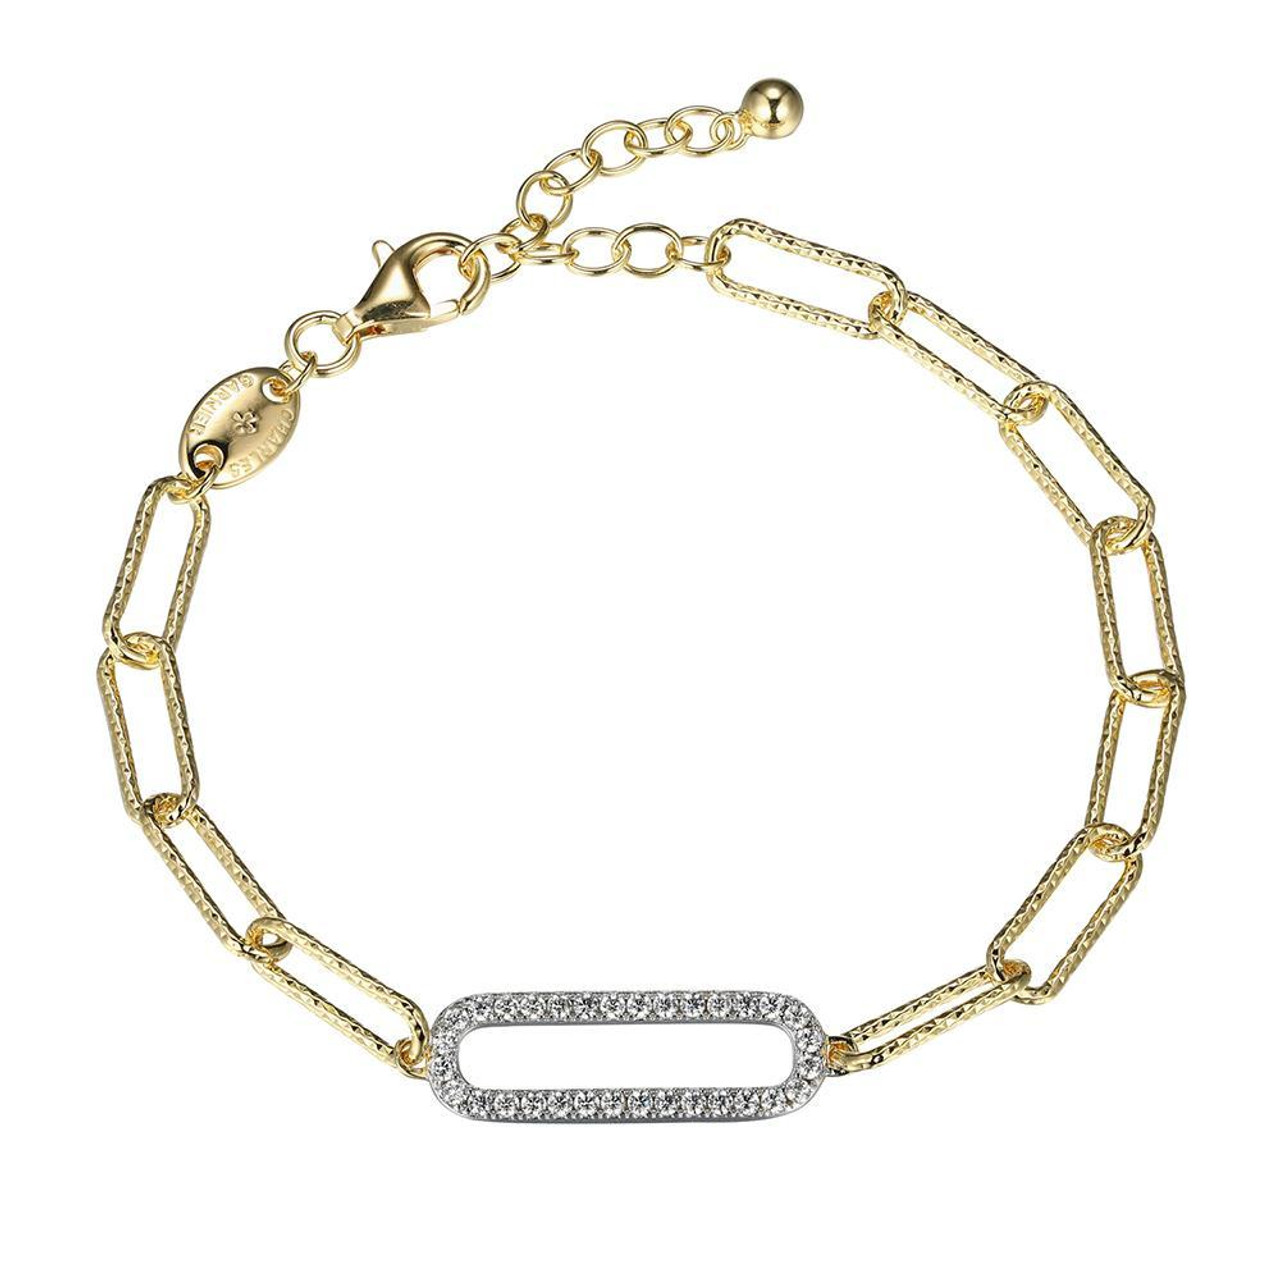 18k Solid Gold Necklace or Bracelet Extender, Adjustable Length 1